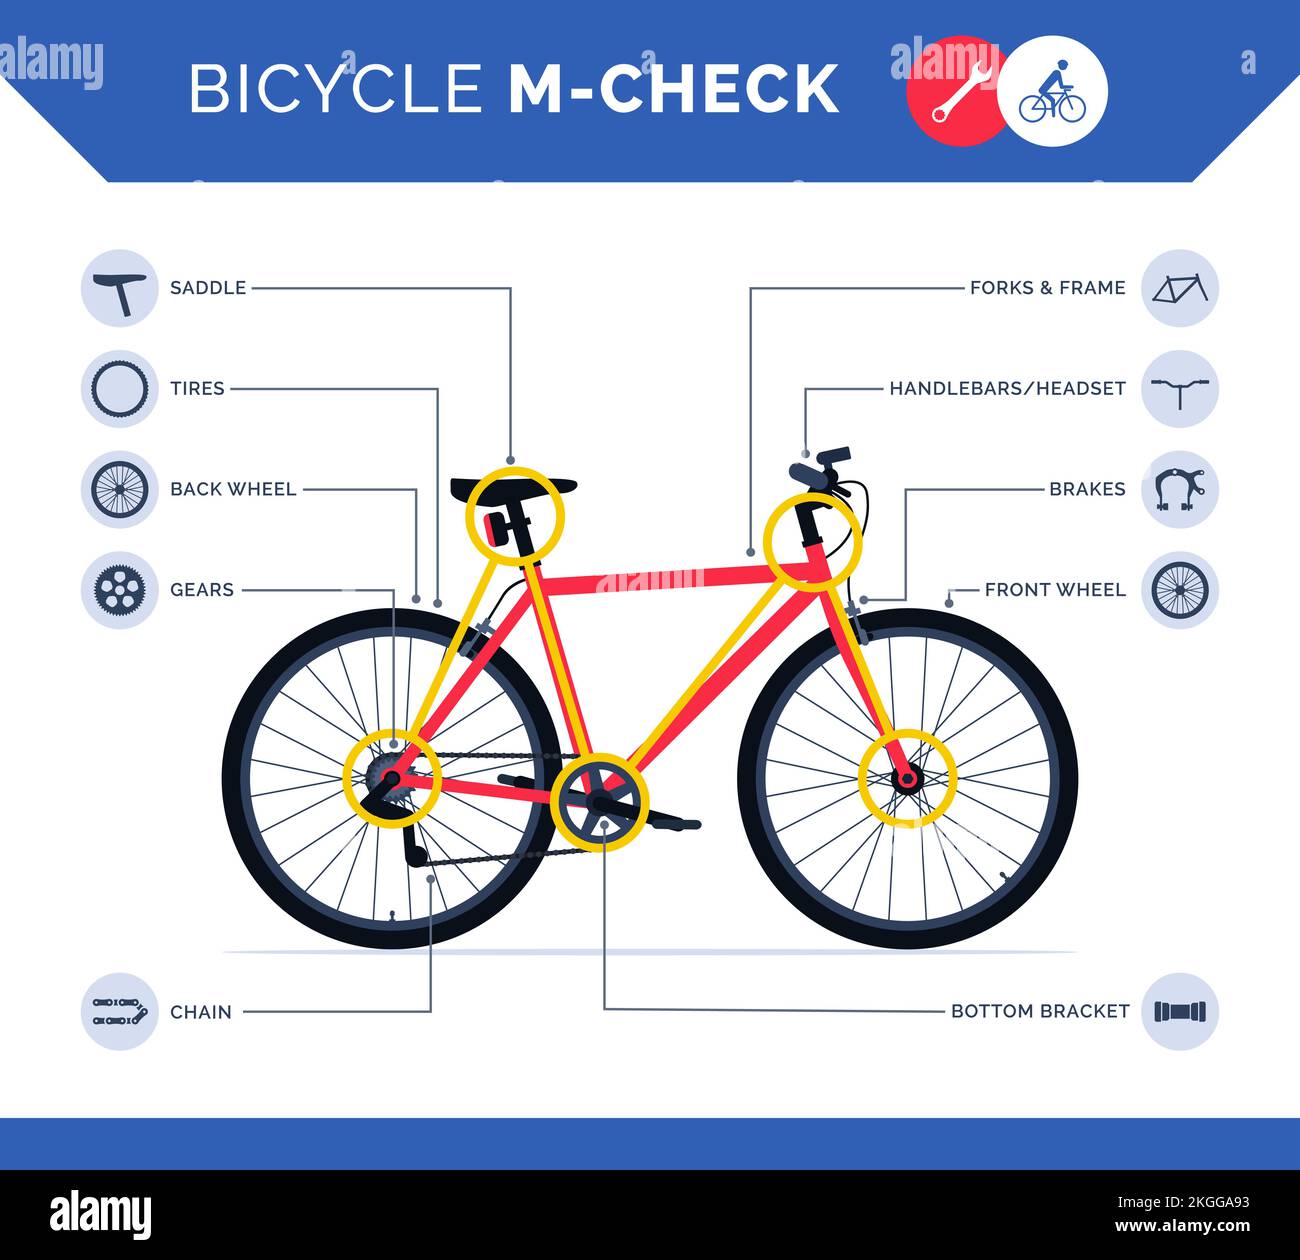 Fahrrad-M-Check-Infografik mit Fahrradteile-Symbolen, wie man einen Pre-Ride-Check macht und sicher fährt Stock Vektor